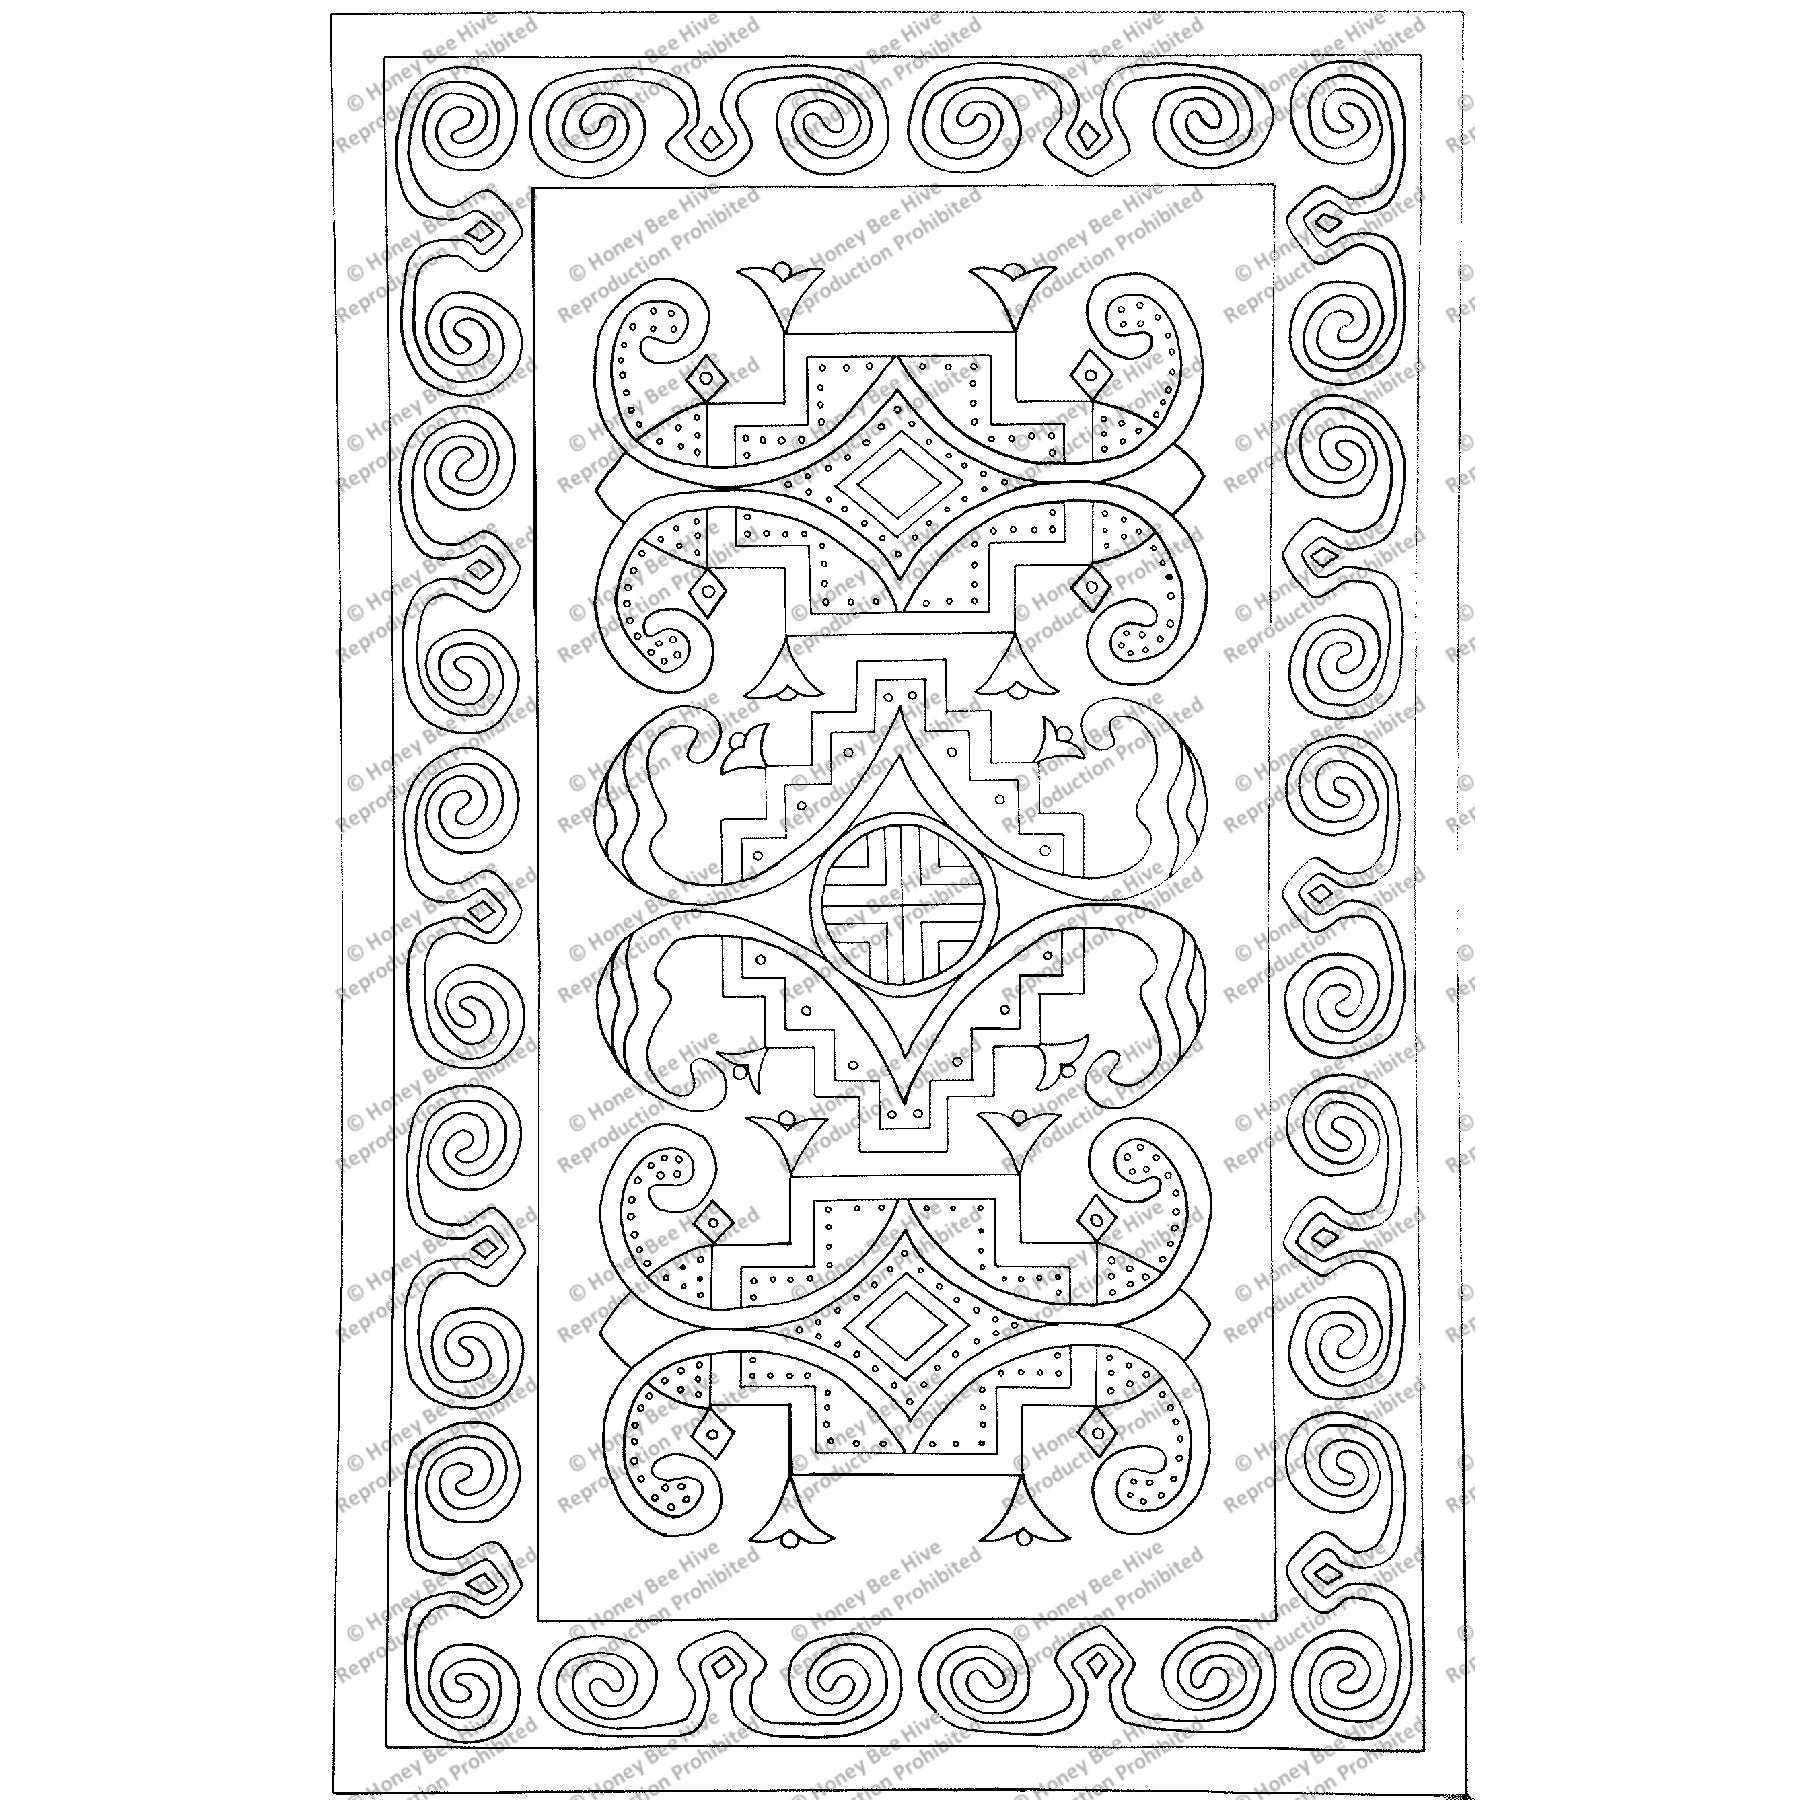 Micmac - Large, rug hooking pattern